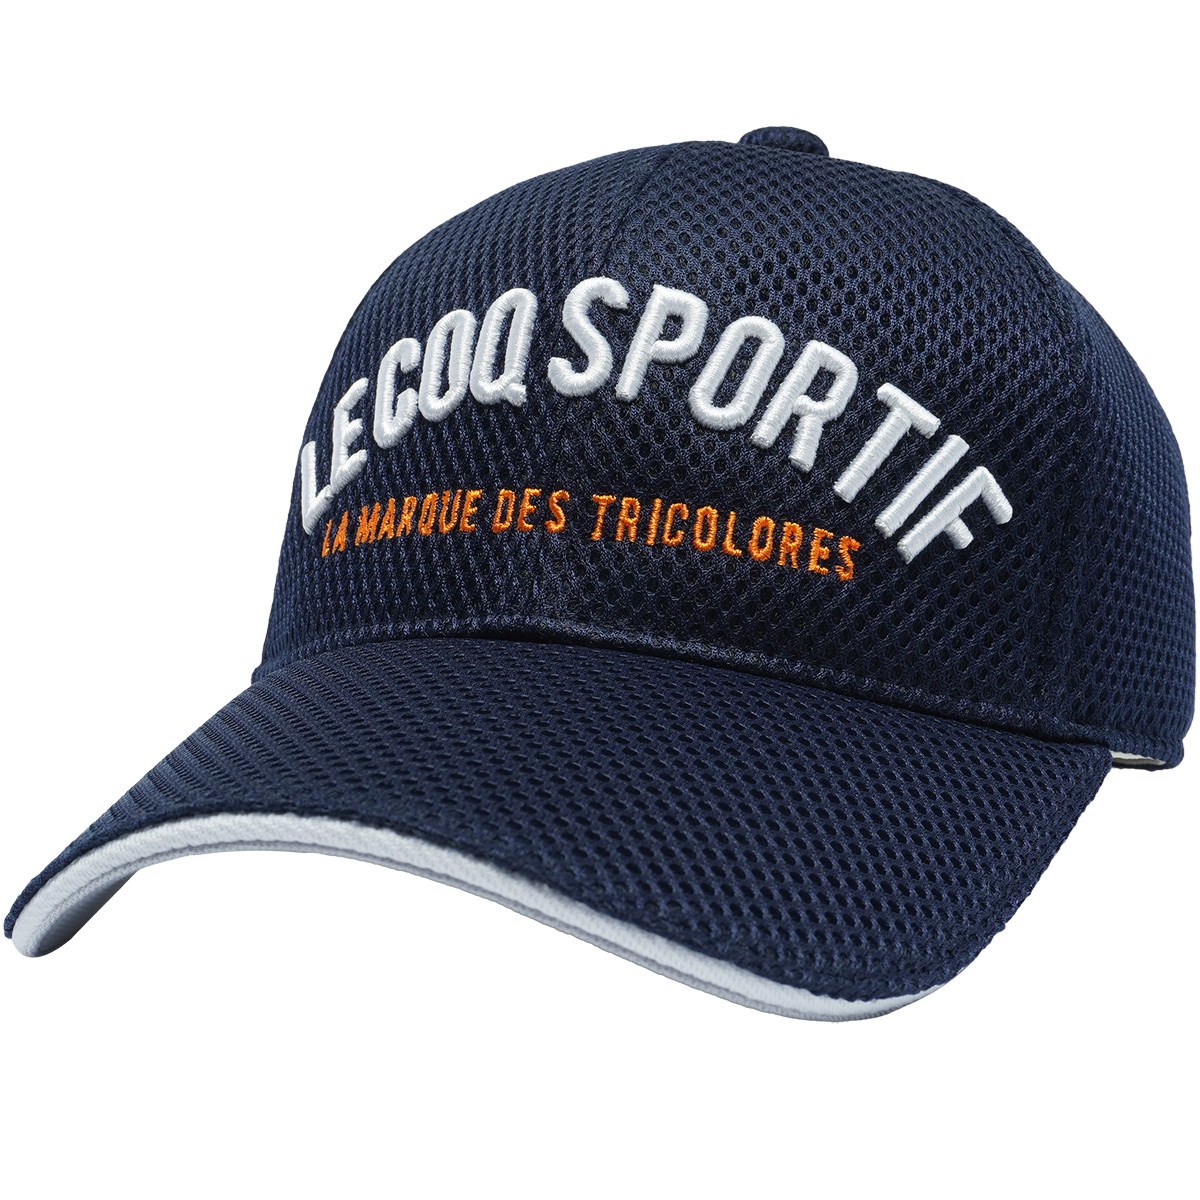 [2022年モデル] ルコックゴルフ Le coq sportif GOLF クーリングゴルファーズキャップ ネイビー 00 レディース ゴルフウェア 帽子